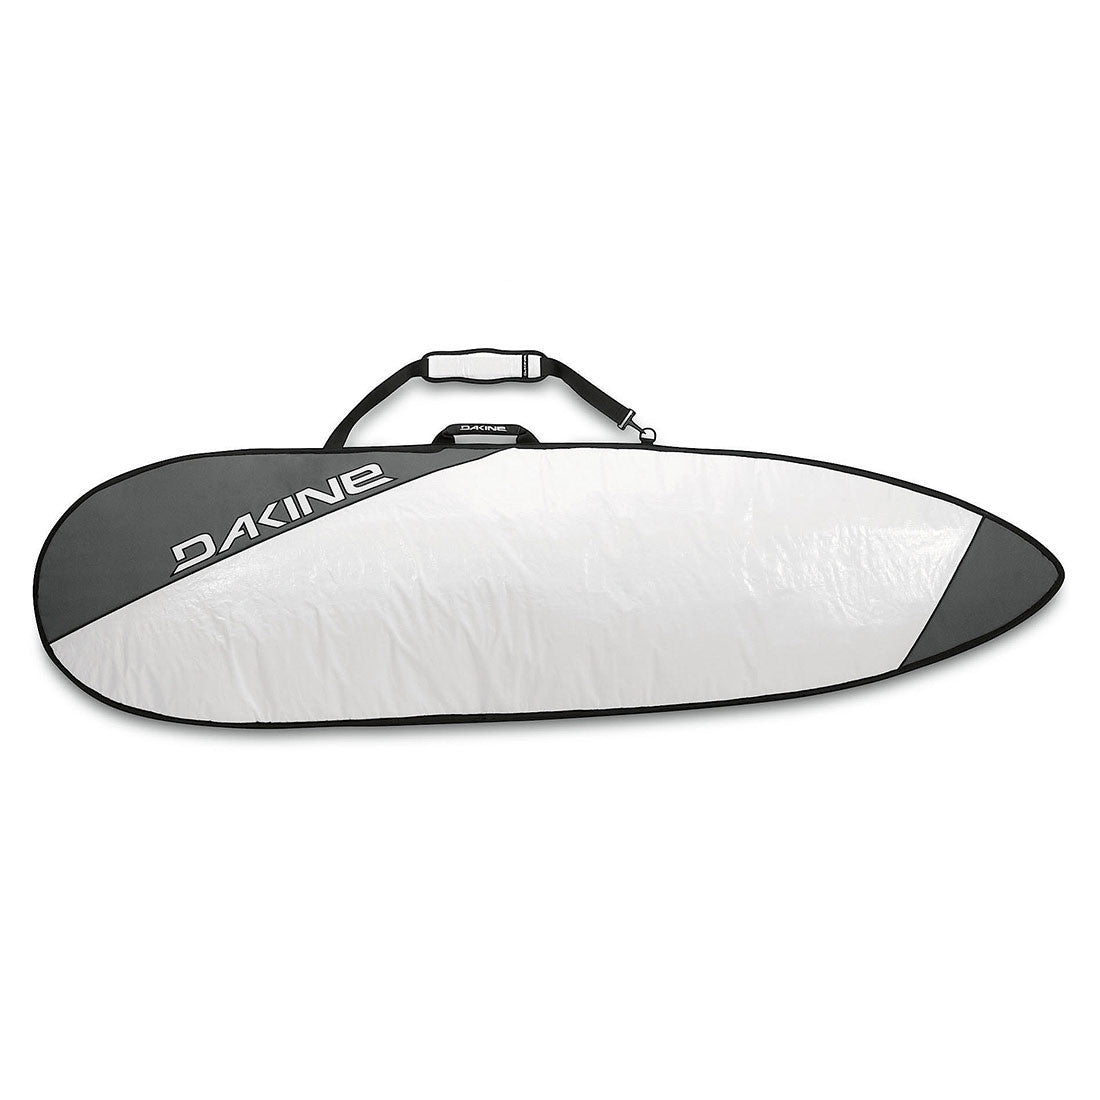 Dakine 6'0" Daylite Surfboard Bag (Thruster)